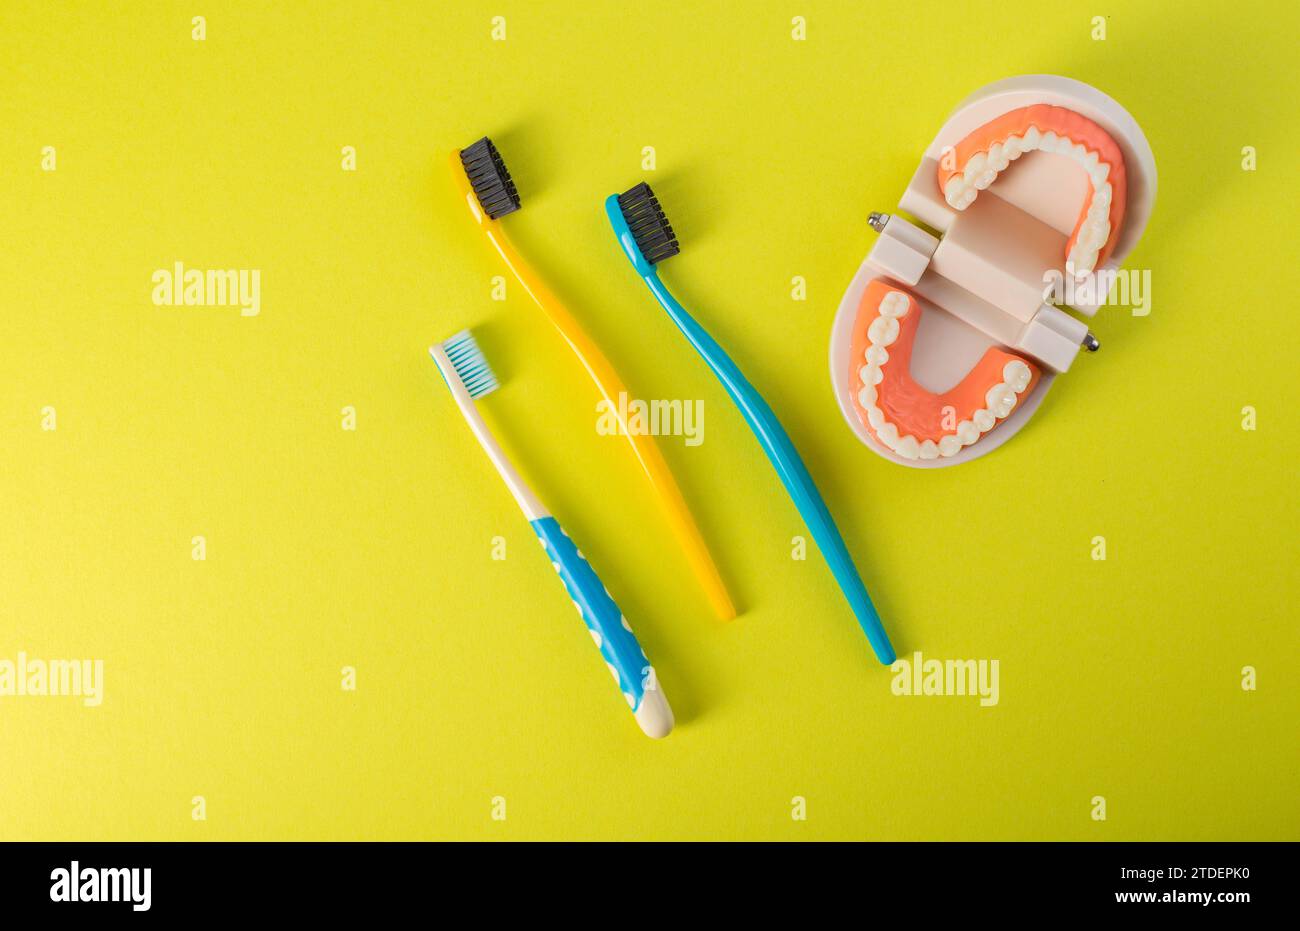 Tre spazzolini da denti, per adulti e bambini, su sfondo giallo con un modello di mascella dentale. Concetto di odontoiatria familiare, pulizia e igiene orale. Foto Stock